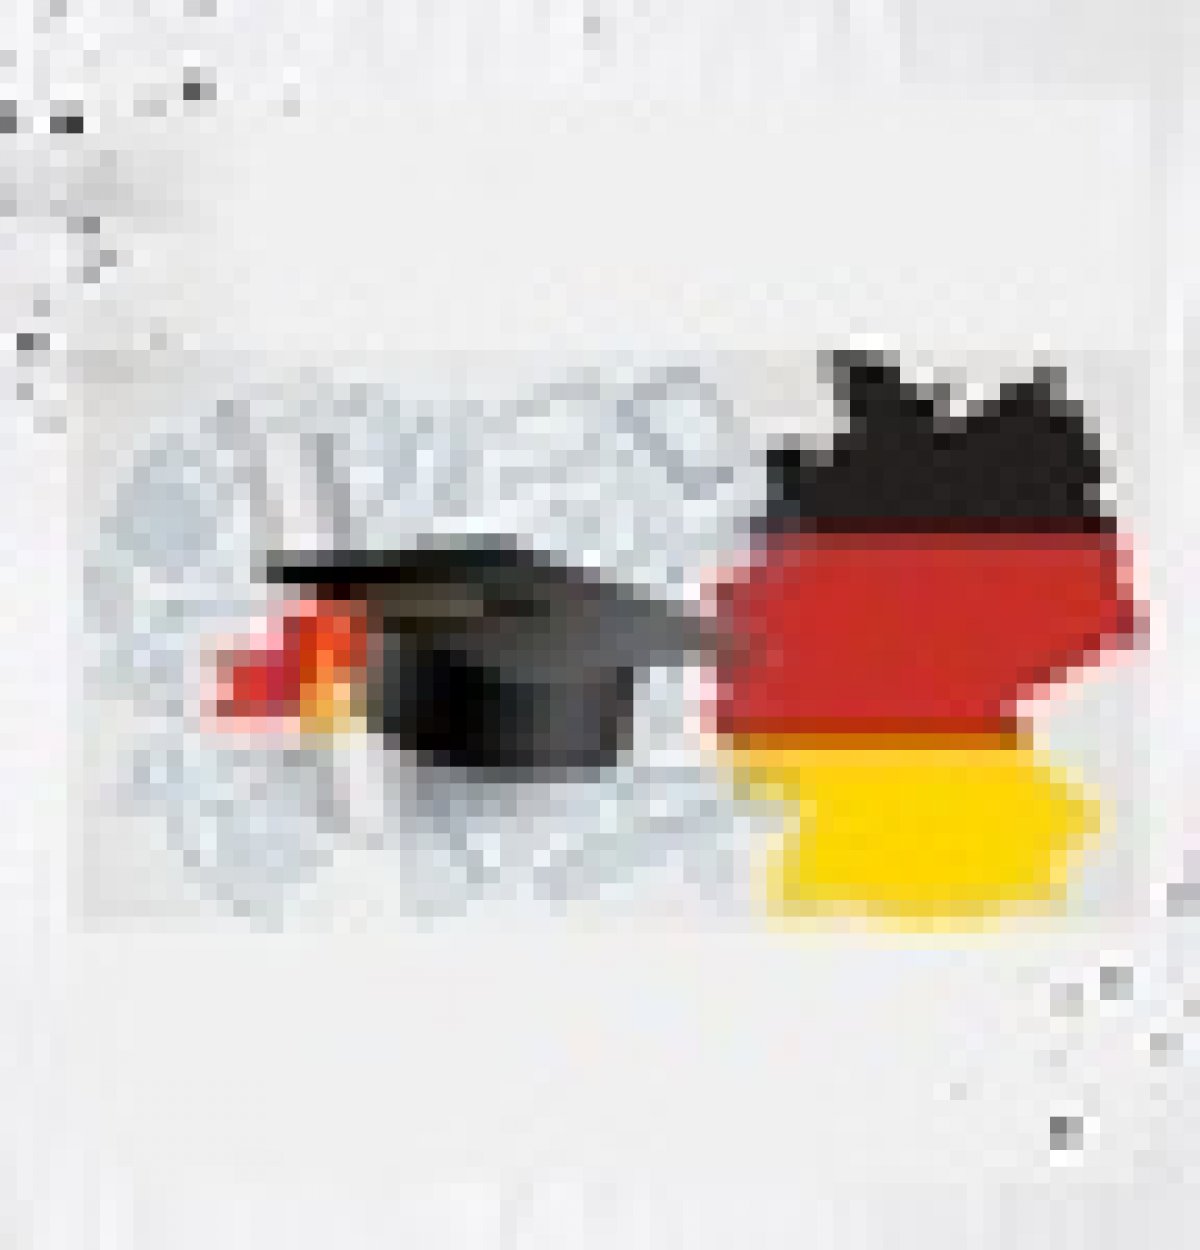 Онлайн-сессия "Ярмарка немецкоязычных образовательных программ"